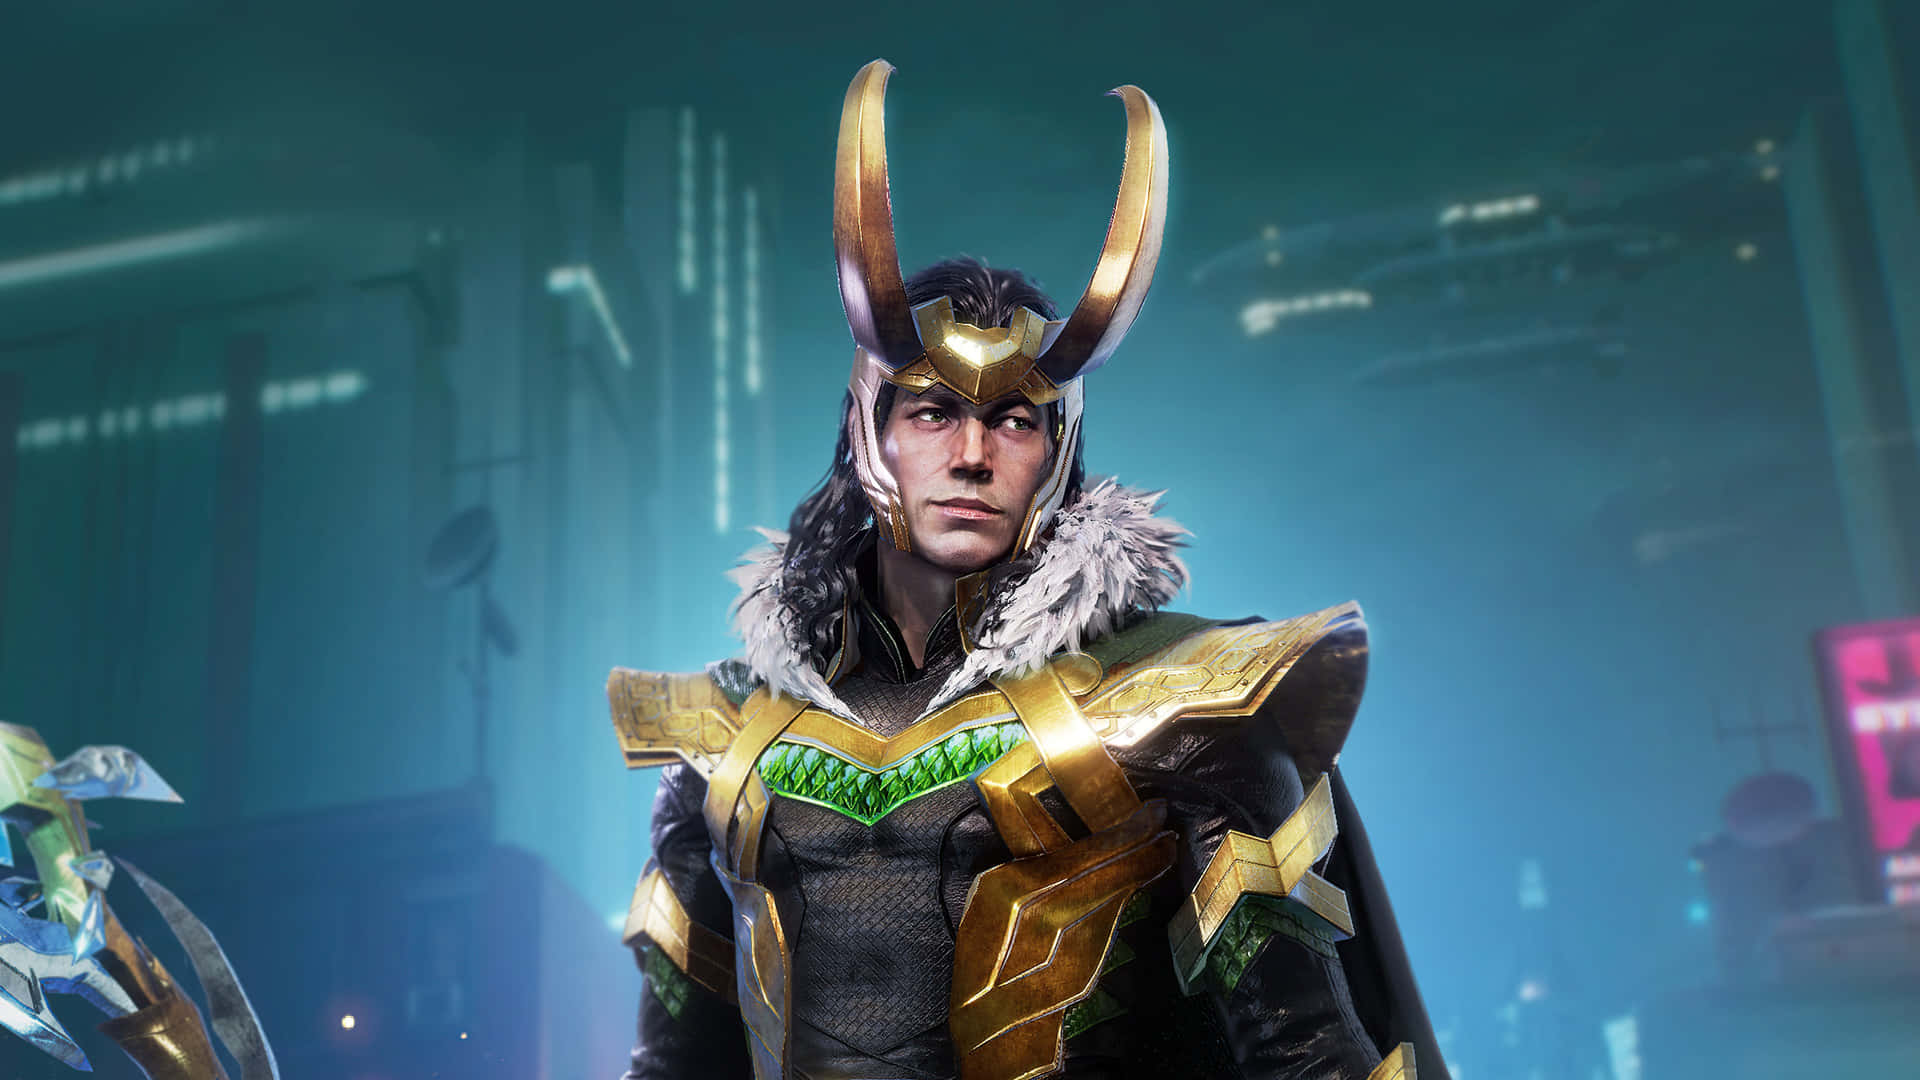 Denne tapet har Tom Hiddleston som Marvels Gud for Narrestreger Loki. Wallpaper